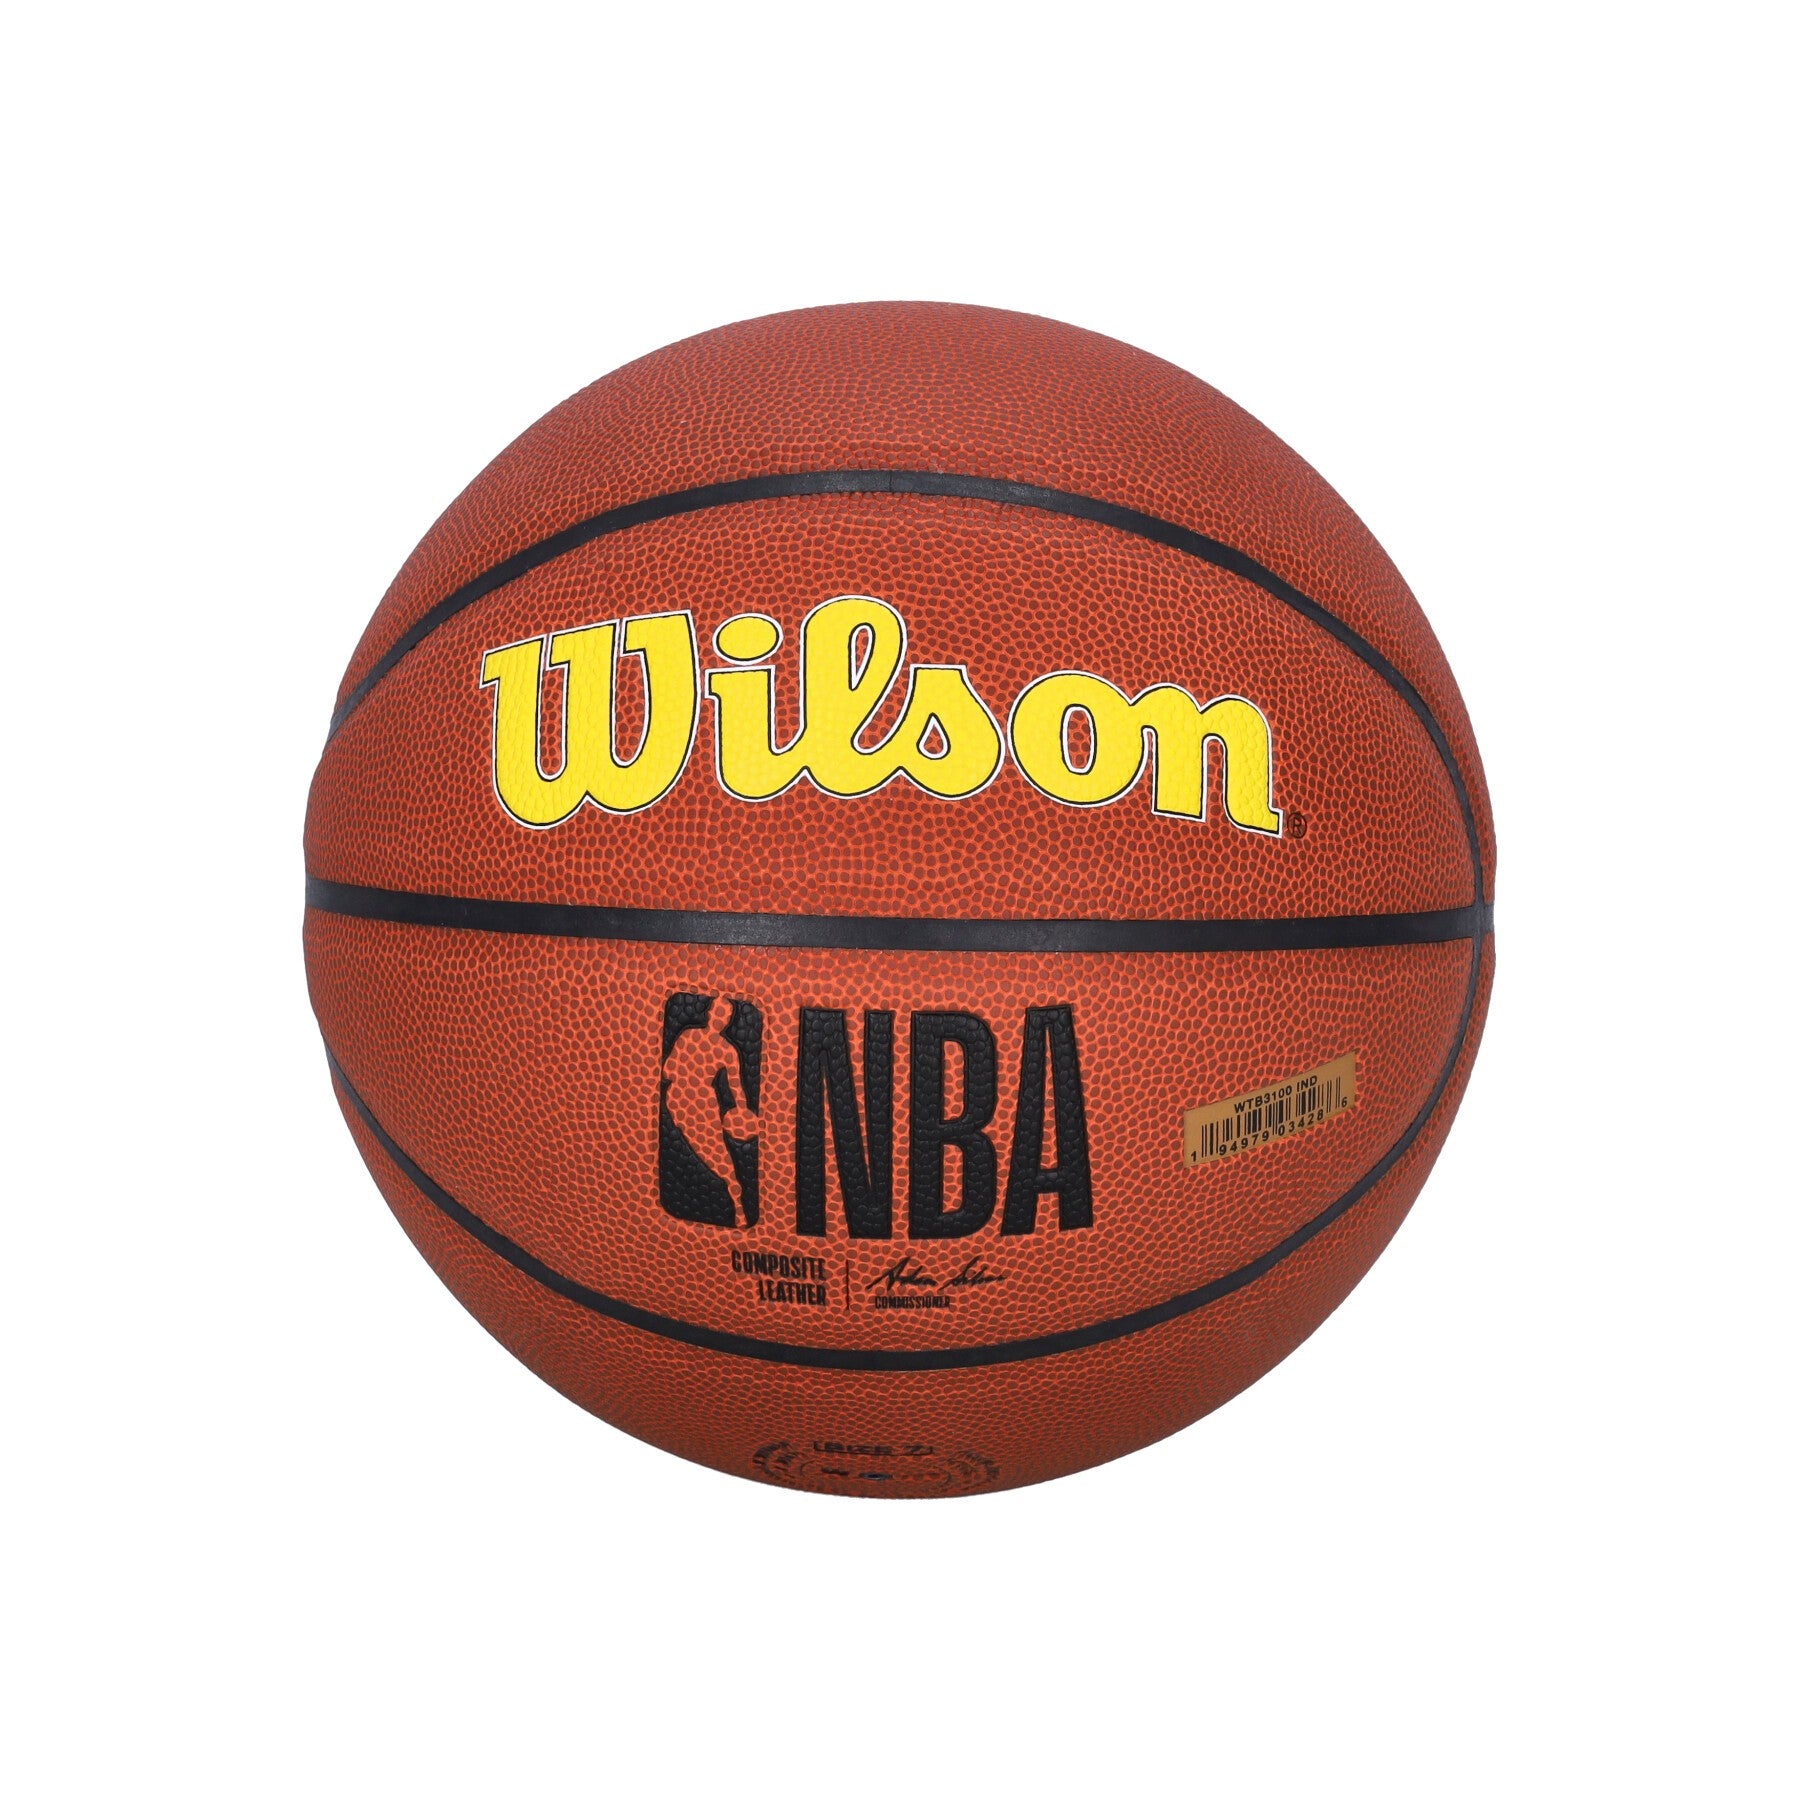 Herren NBA Team Alliance Basketball Größe 7 Indpac Original Teamfarben